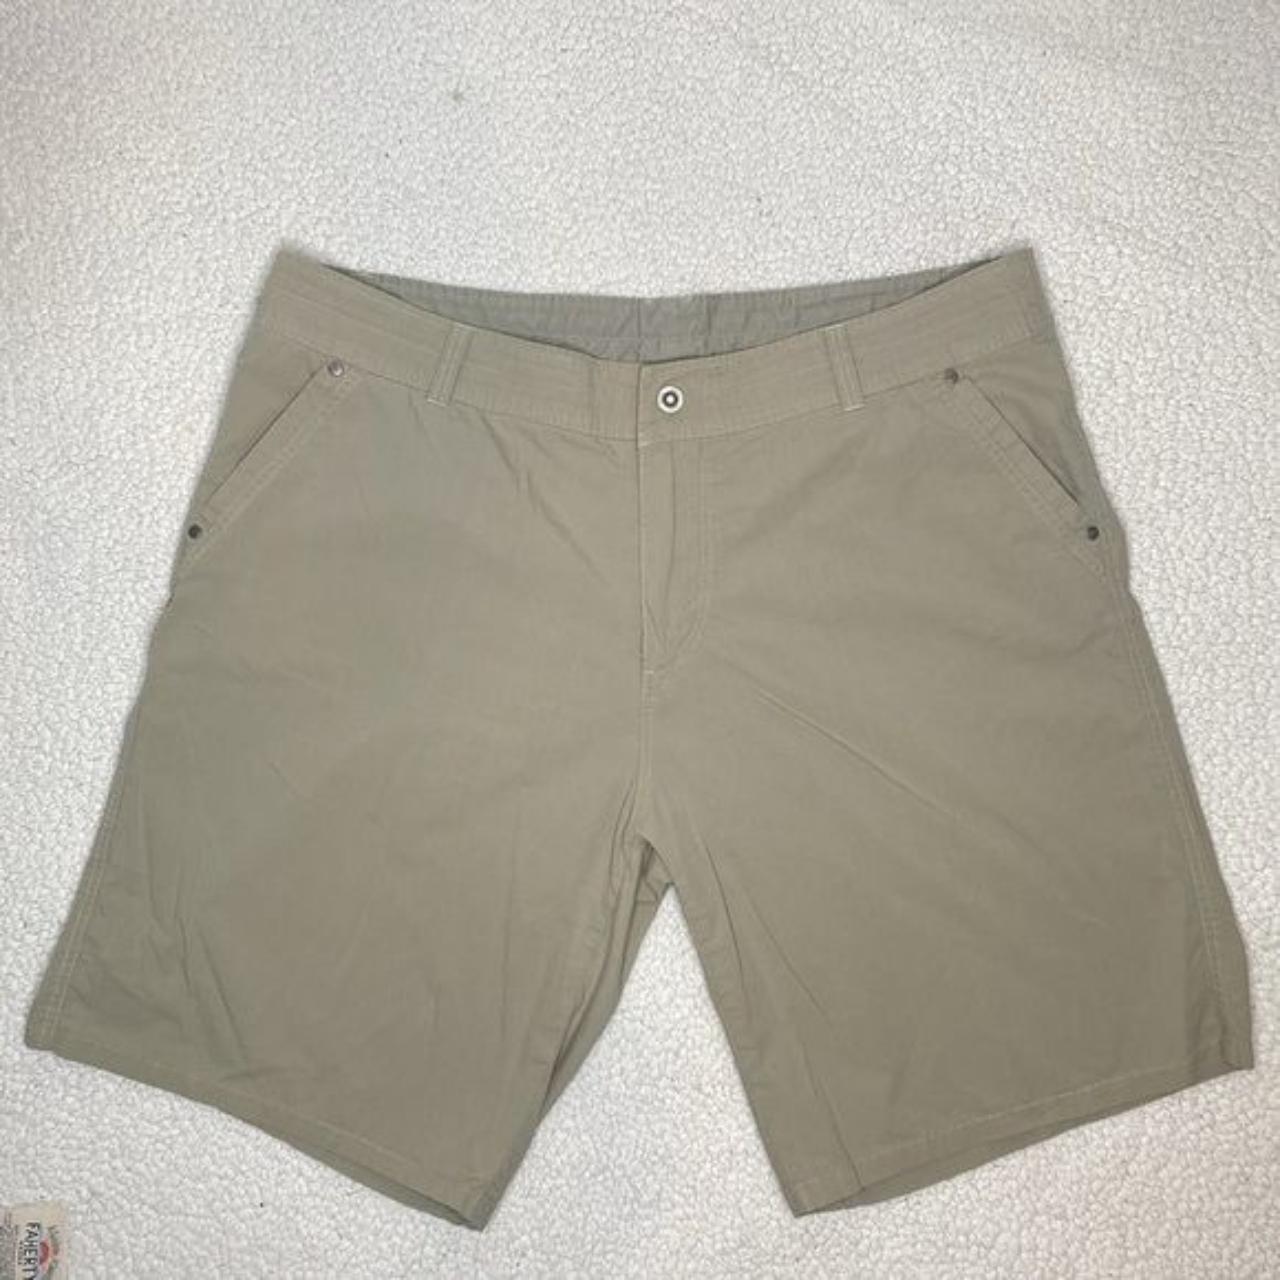 Gently worn KÜHL Kontour shorts in the 8 inseam - Depop